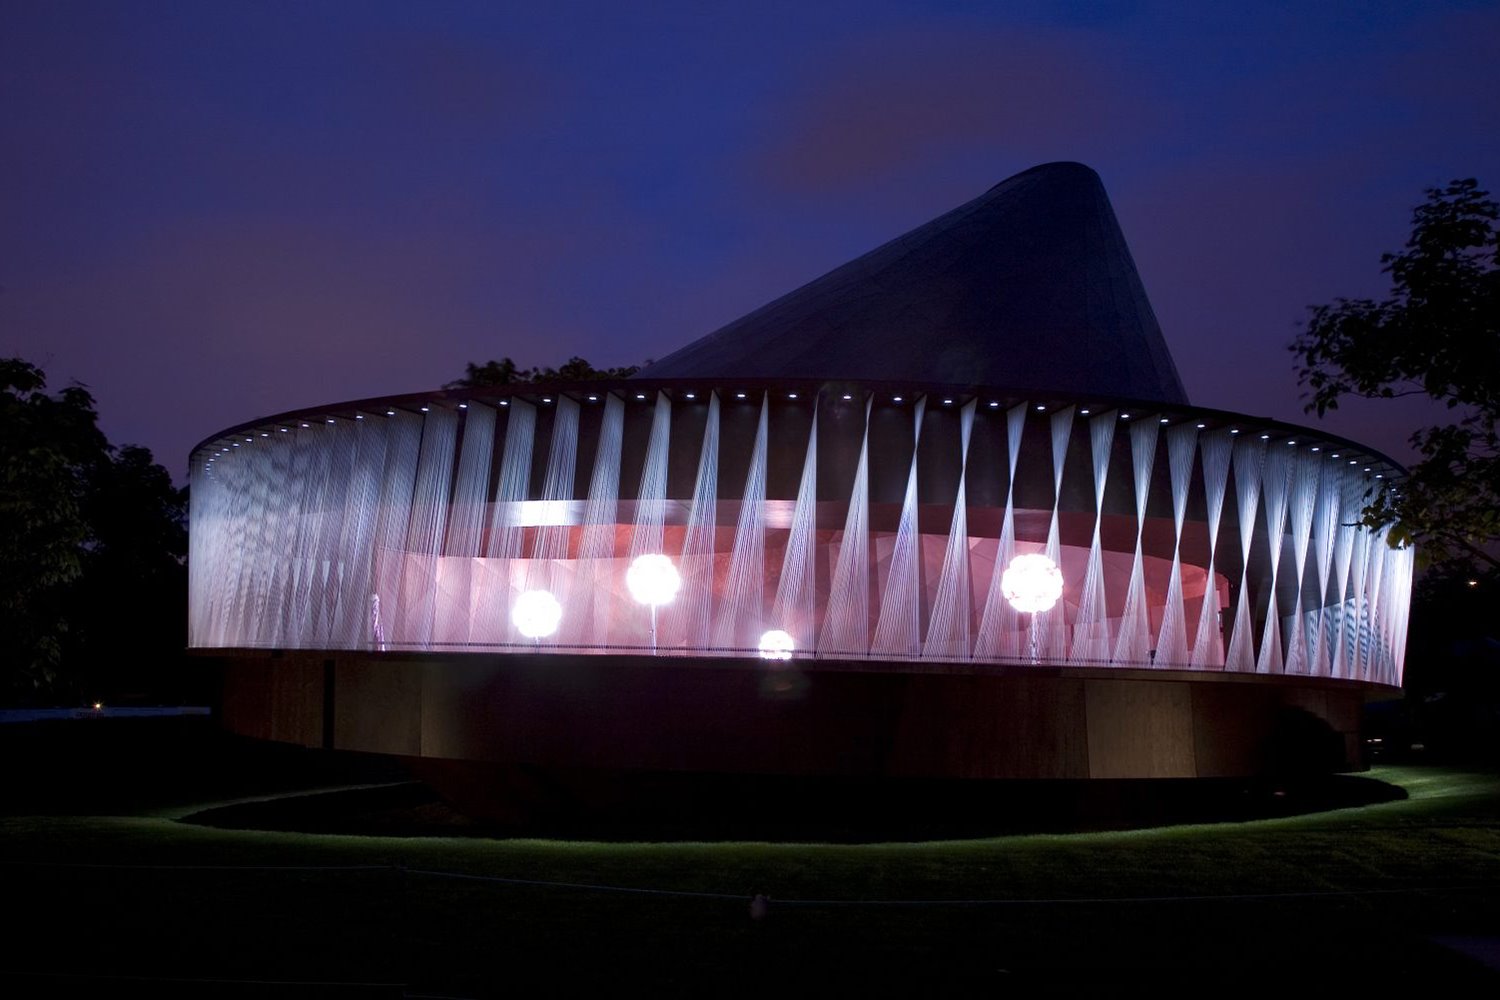 Olafur Eliasson y Kjetil Thorsen diseñaron el Serpentine Pavilion de 2007